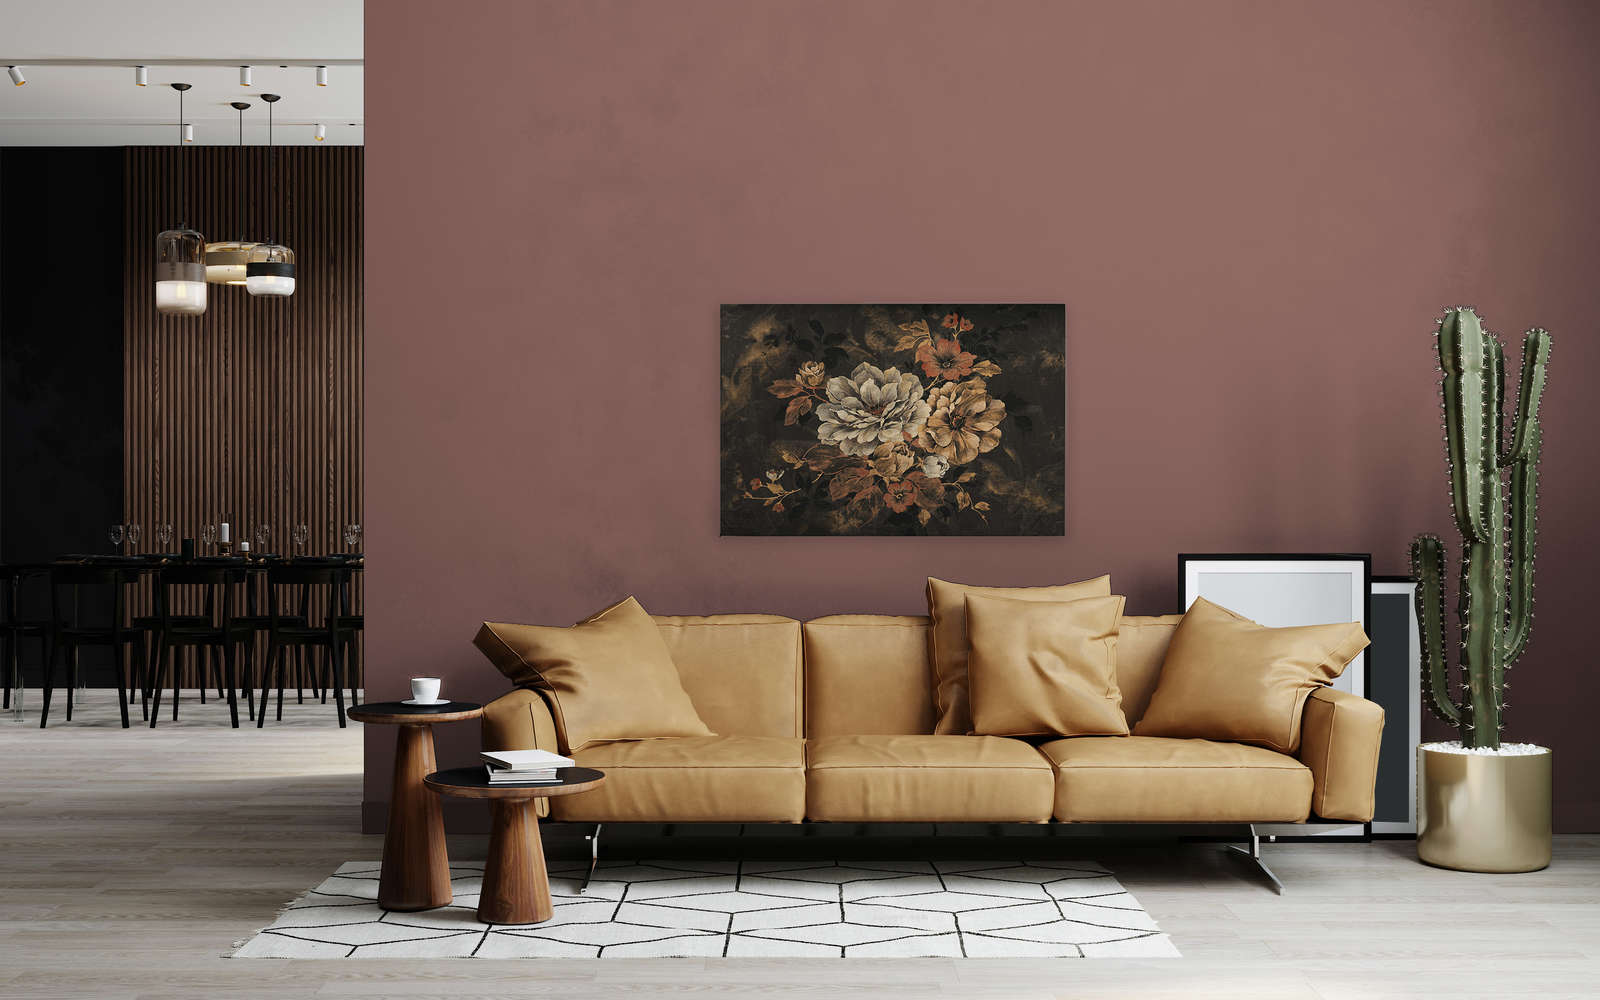             Cuadro lienzo diseño floral, pintura al óleo con aspecto vintage - 1,20 m x 0,80 m
        